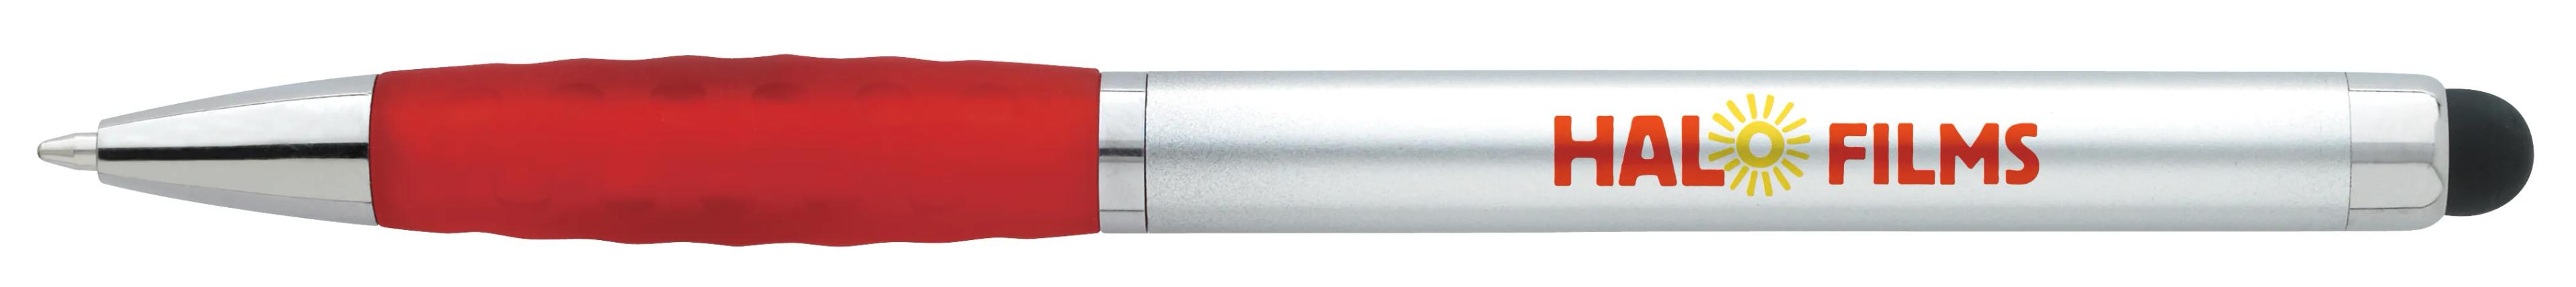 Silver Stylus Grip Pen 9 of 11